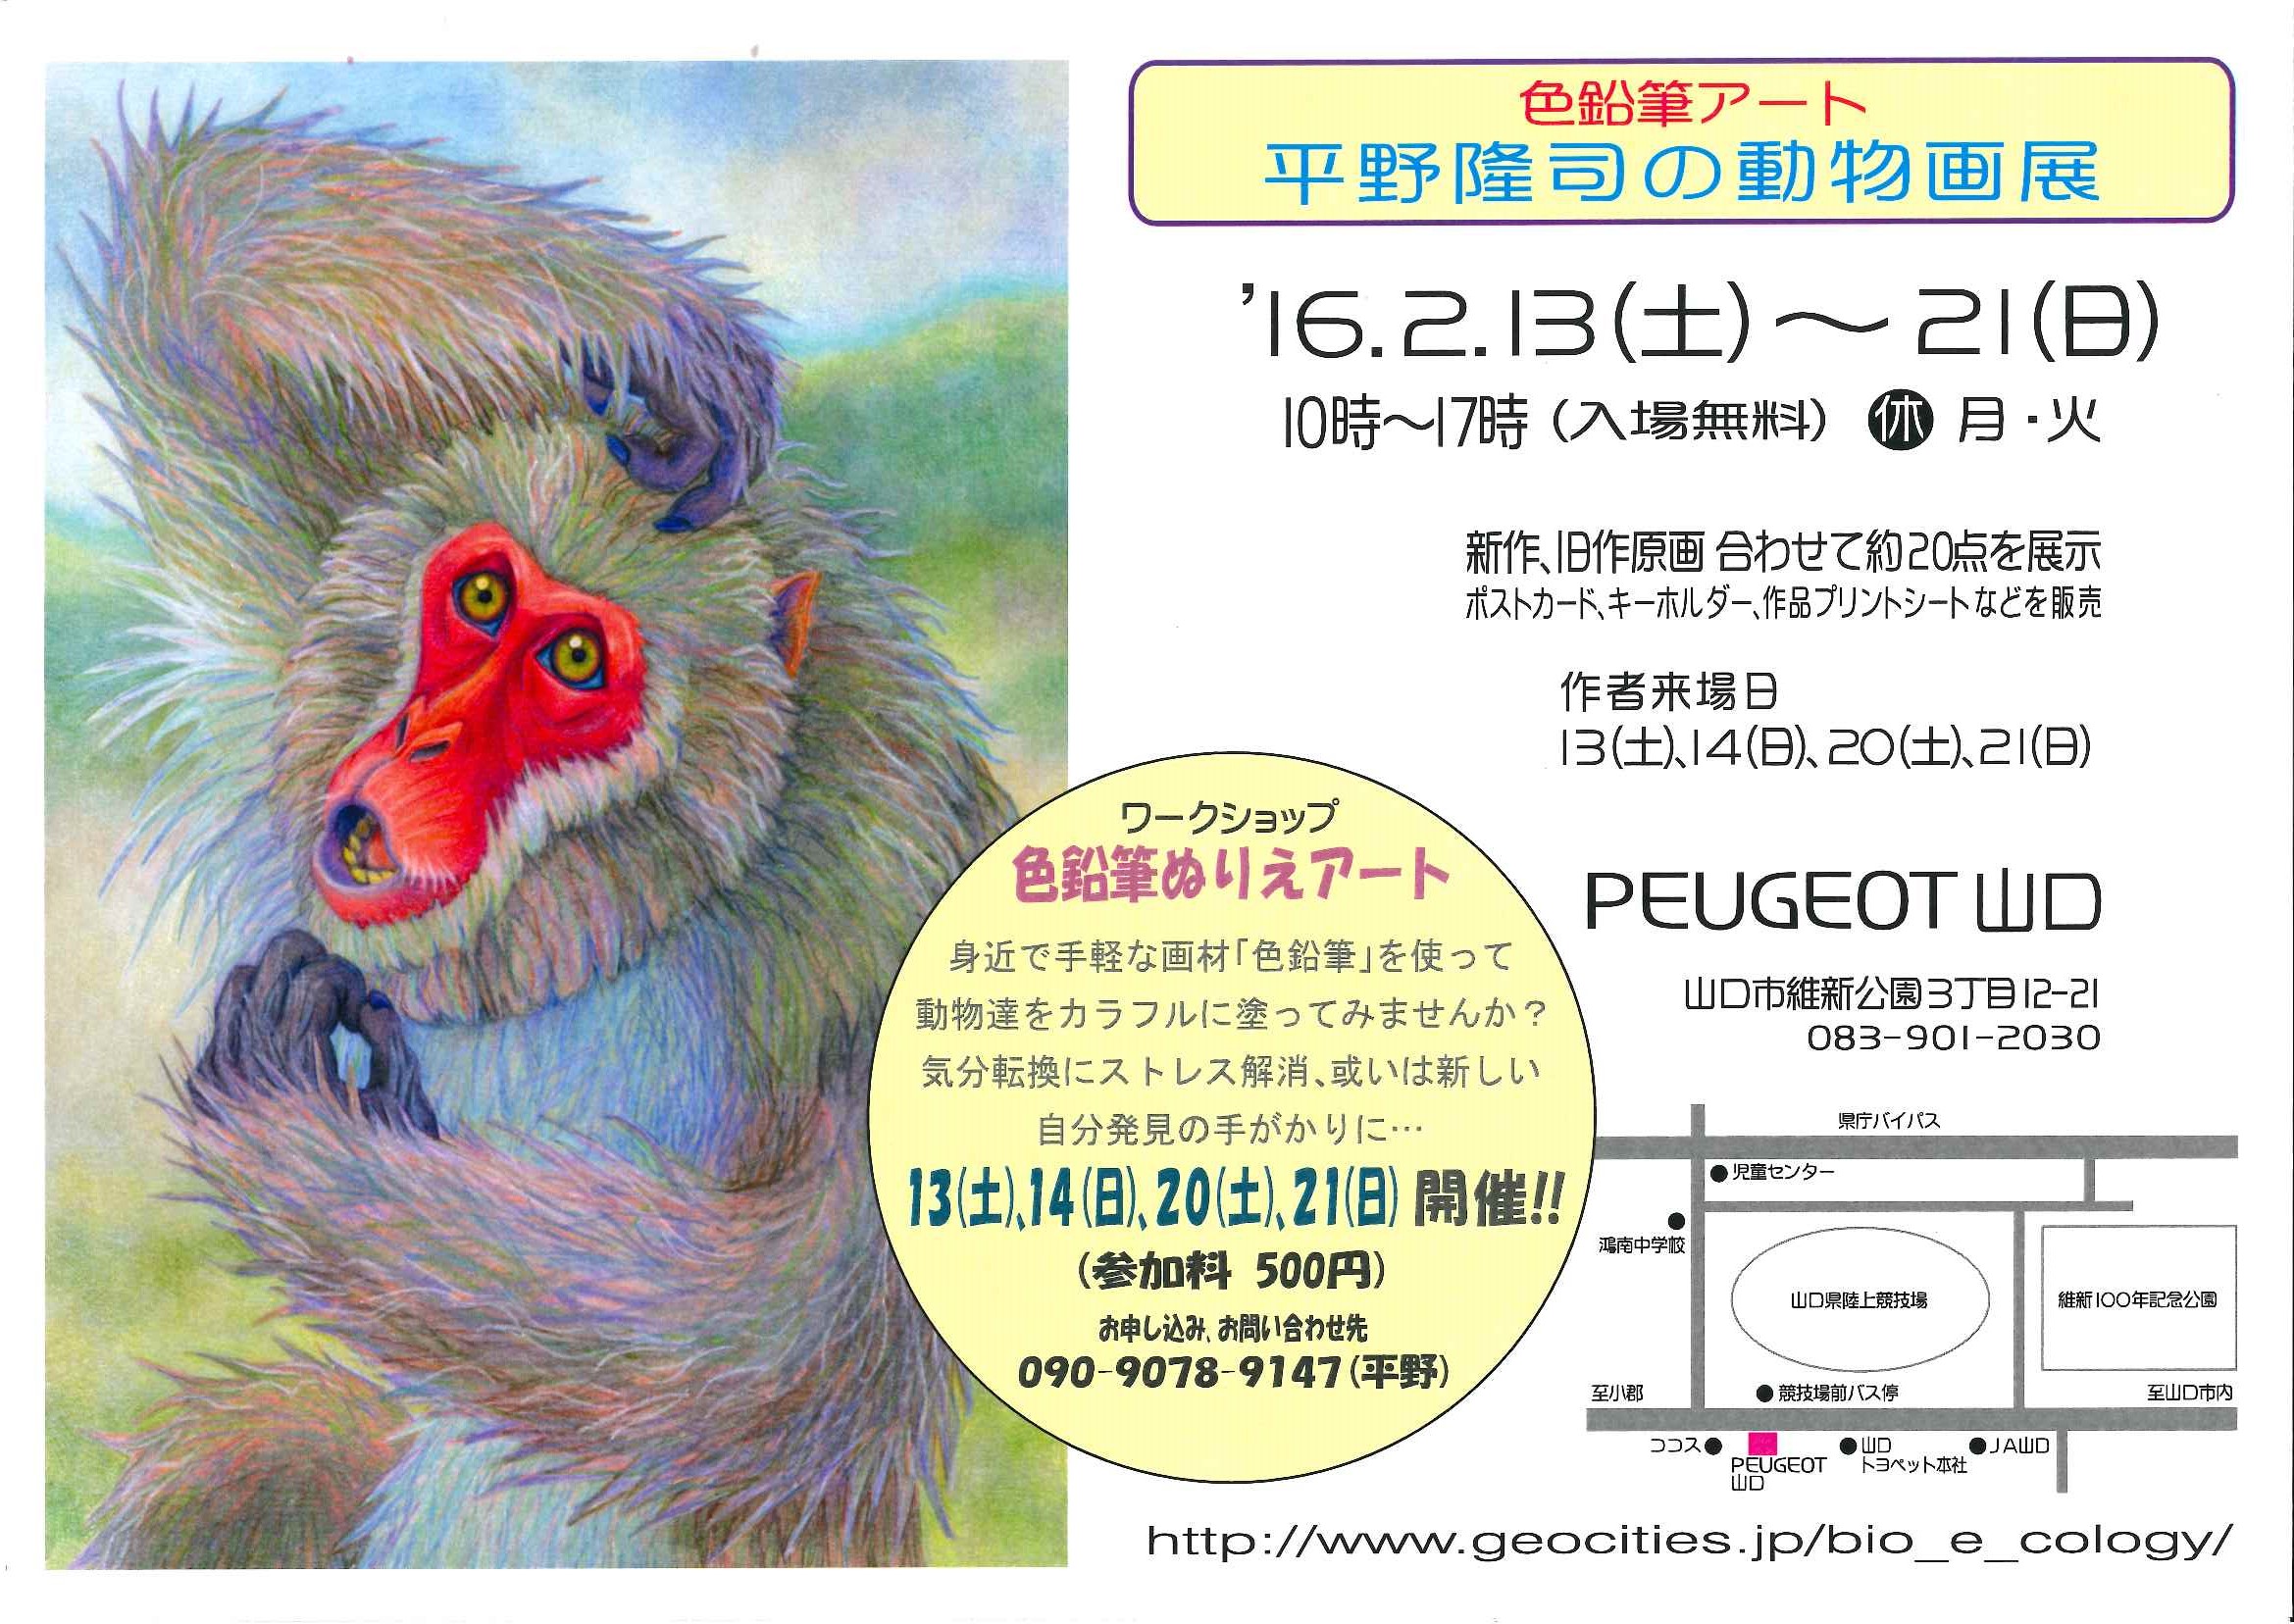 色鉛筆アート 平野隆司の動物画展